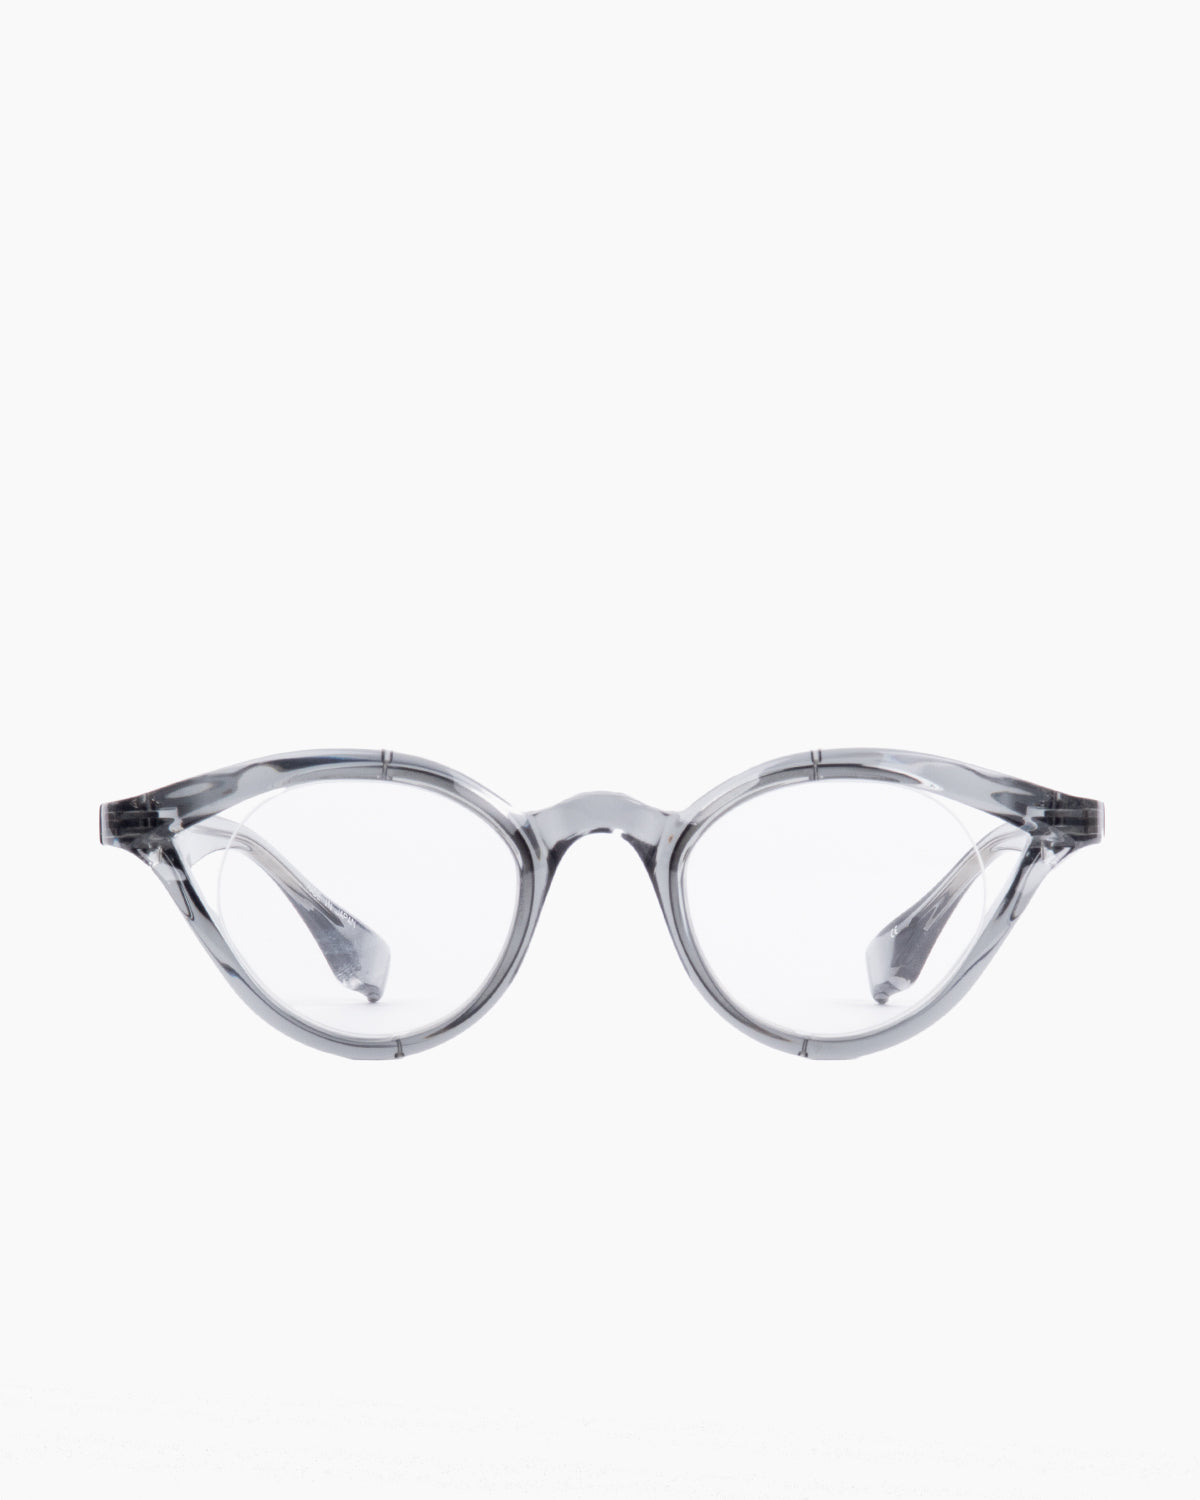 Factory 900 - RF140 - 493 | Bar à lunettes:  Marie-Sophie Dion